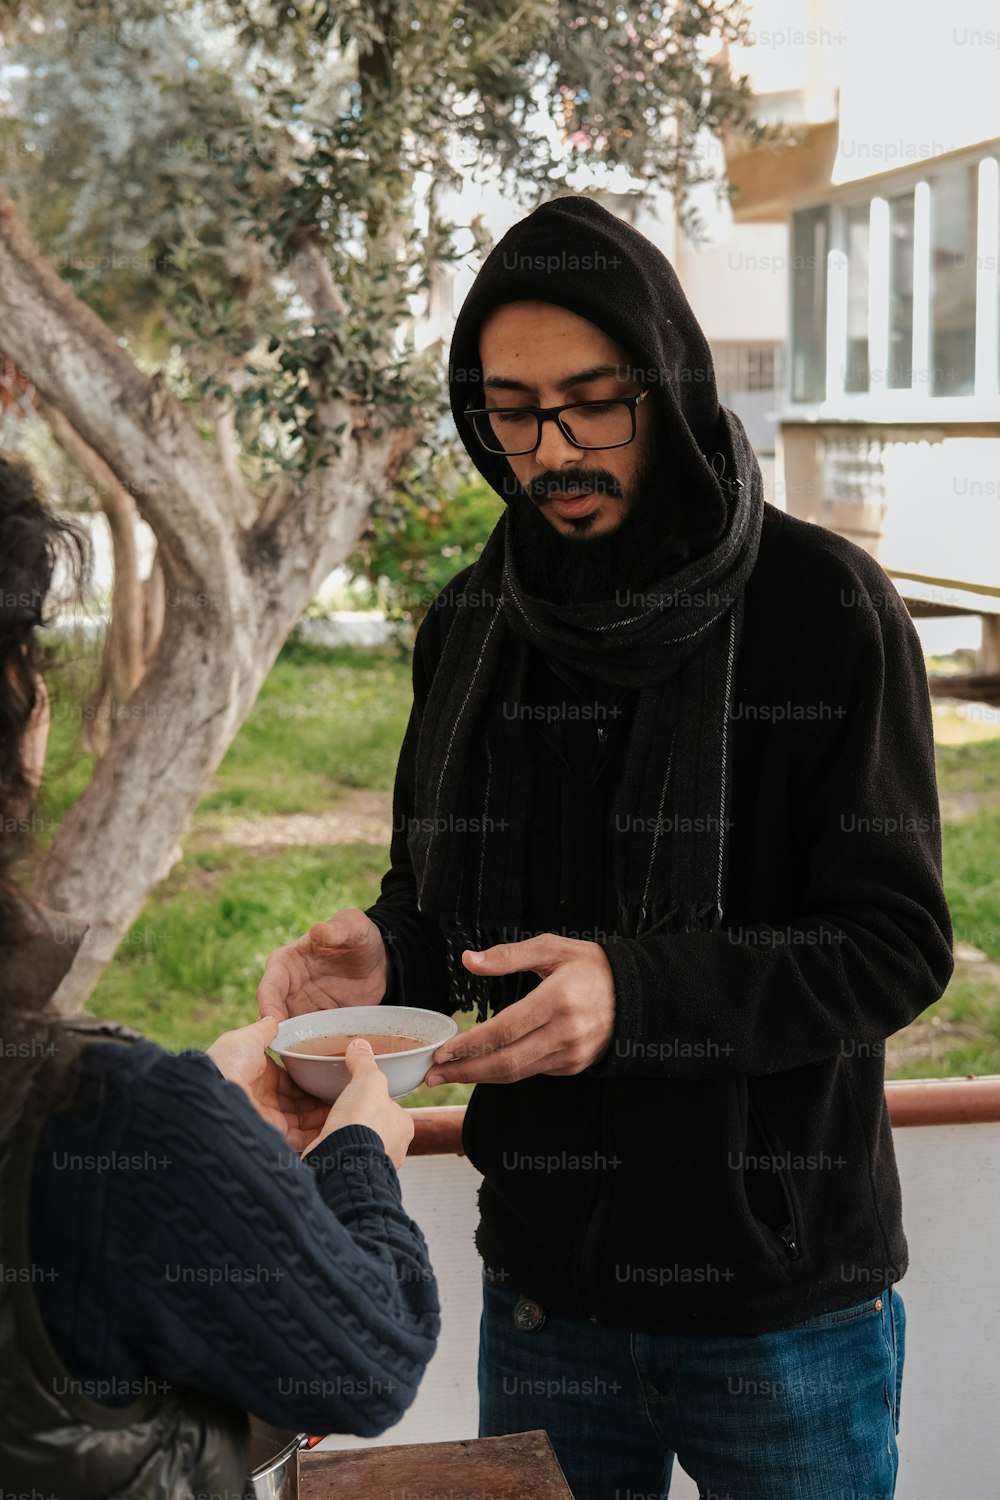 Un hombre con una sudadera con capucha le está entregando un plato a una mujer